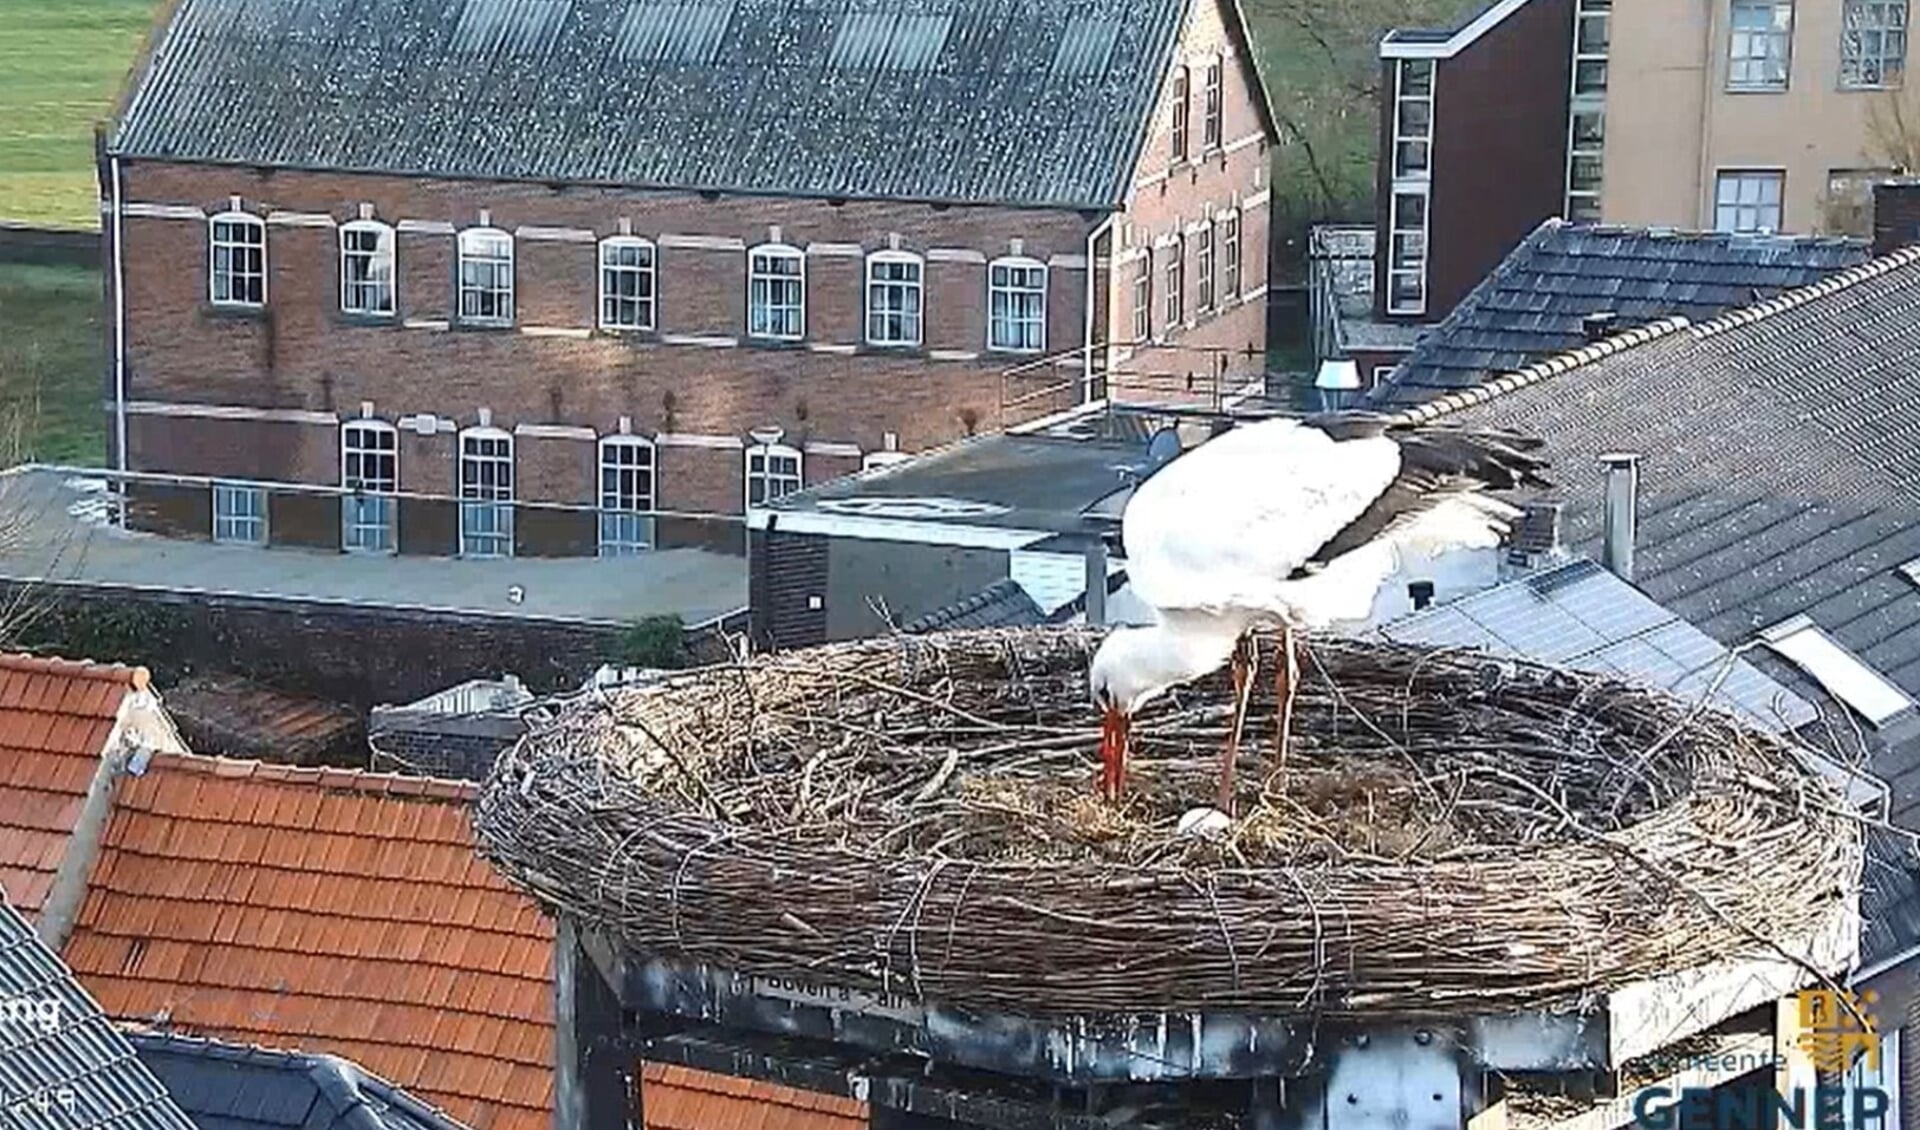 Een van de ooievaars waakt over het eerste ei in het nest op het stadhuis. (foto Beleefdelente.nl)